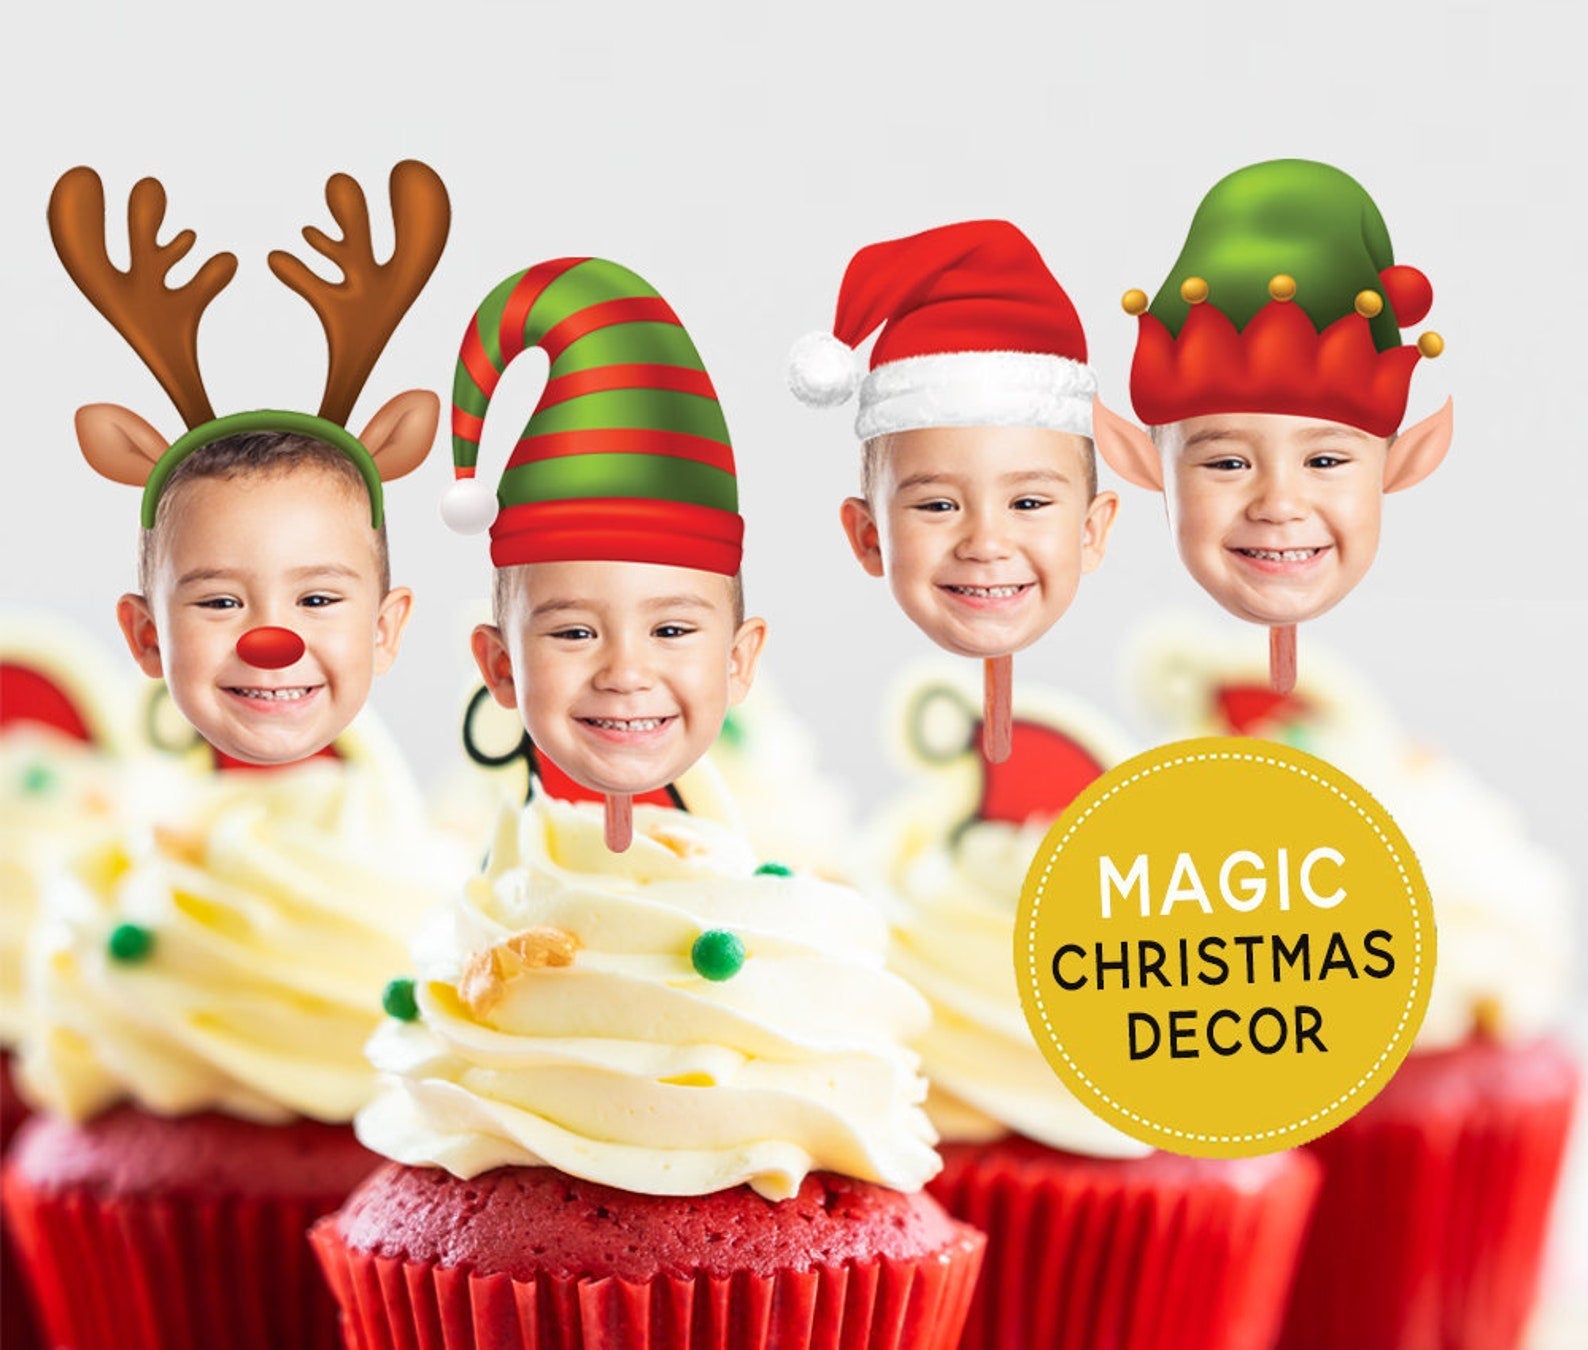 Christmas Cupcake Toppers, Christmas Cupcake Toppers, Printable, Christmas Ornaments, Christmas Decorations, Christmas Birthday